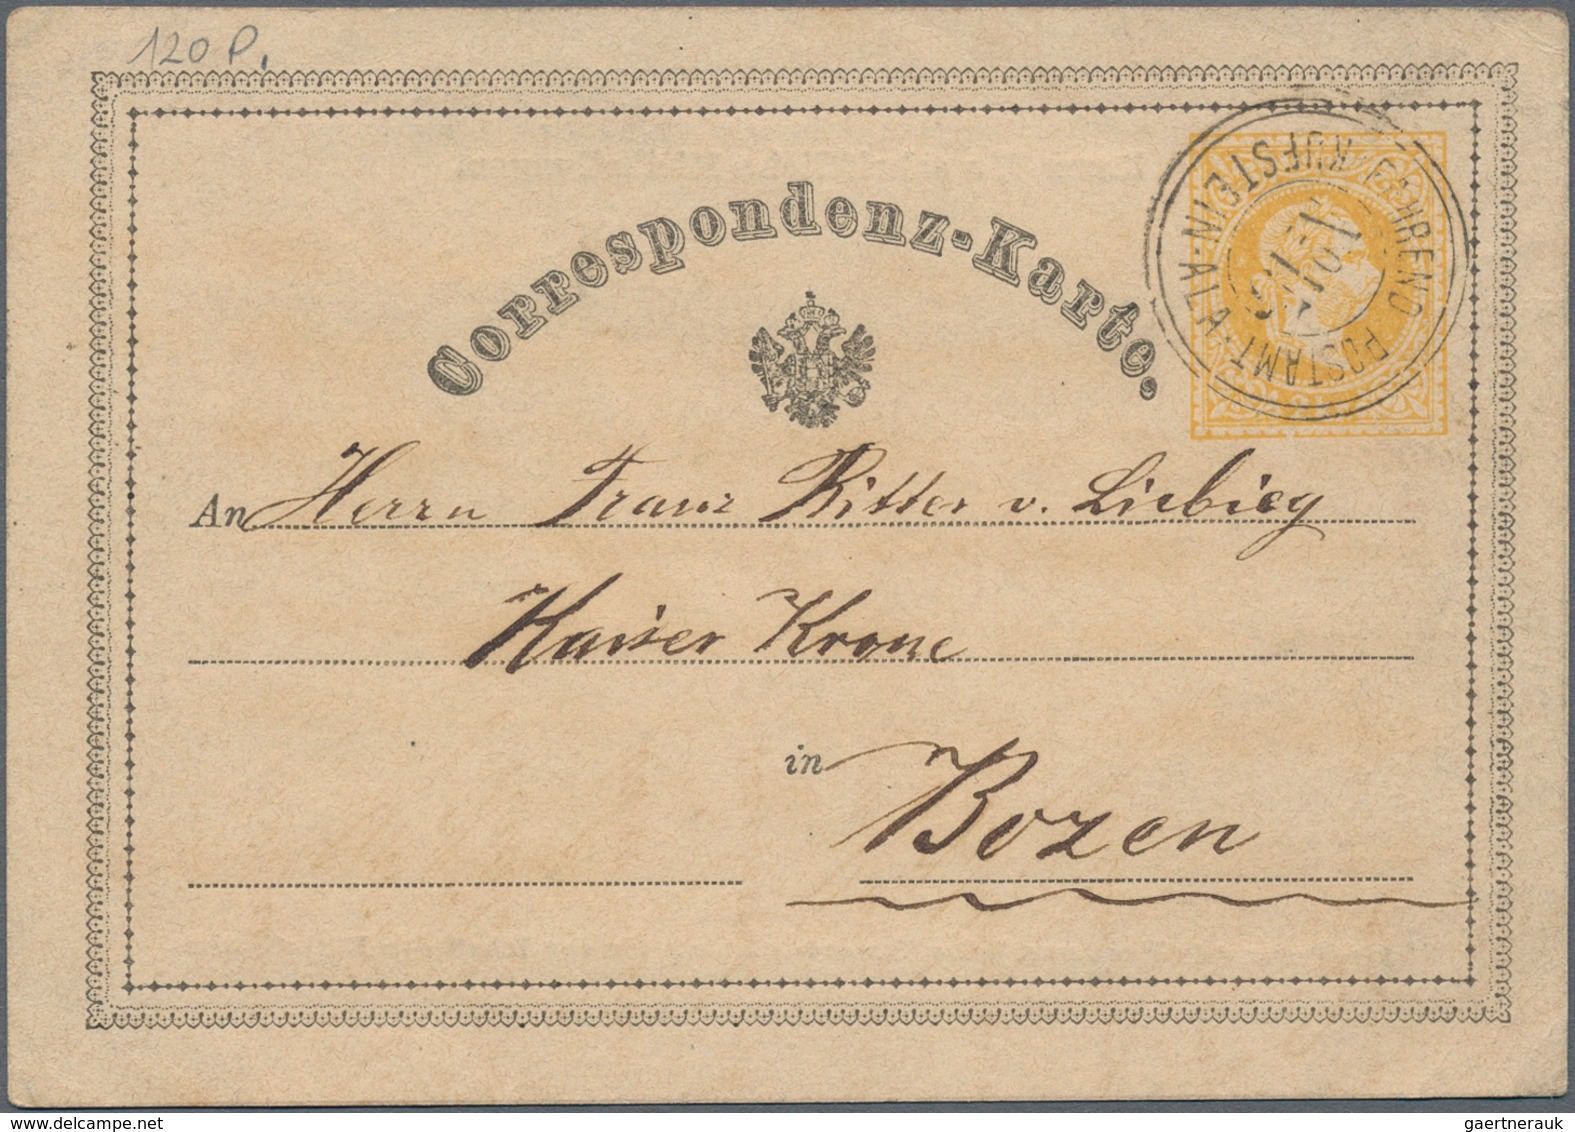 Österreich: 1852 - 1874, Posten Von 26 Belegen, U.a. Briefe Mit 3 Stück 6 Kreuzer-Ausgabe Von St. Pö - Collections